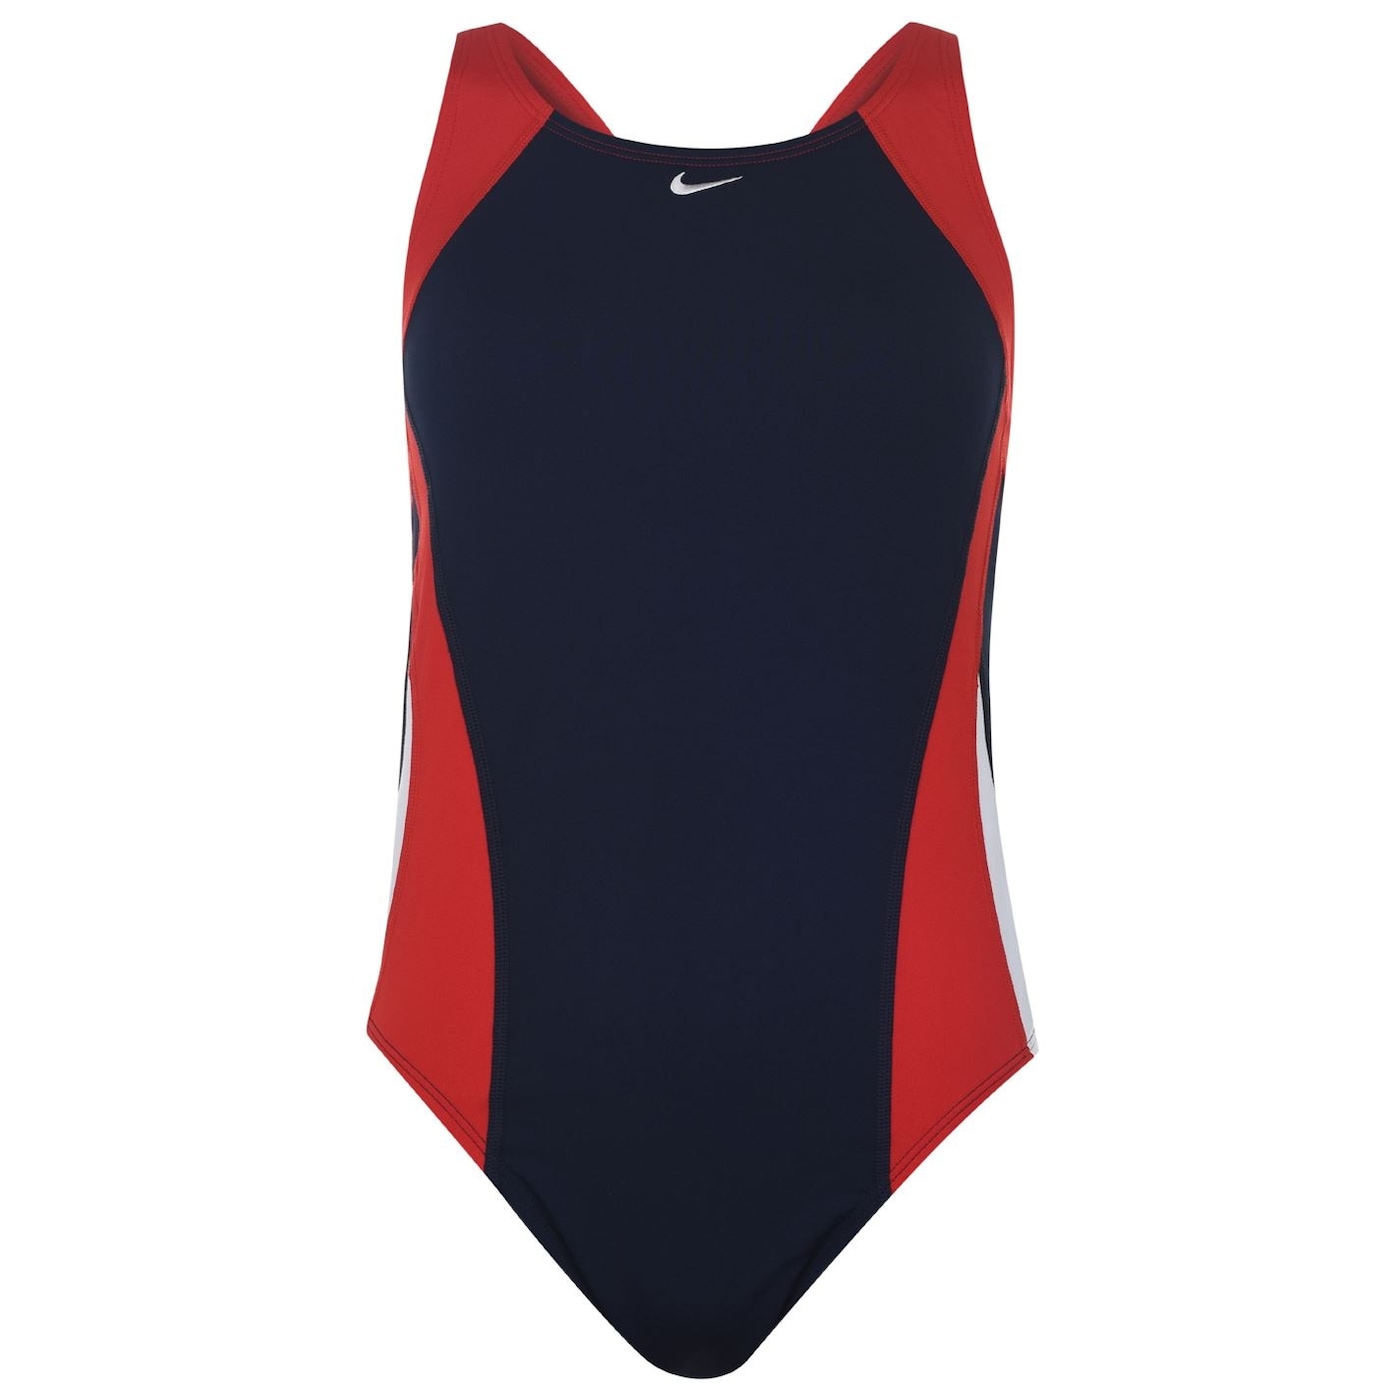 Жени  Дамско облекло  Цели бански & Половинки  Бански за плуване Nike Poly One Piece Swimsuit Ladies 1049754-6331601